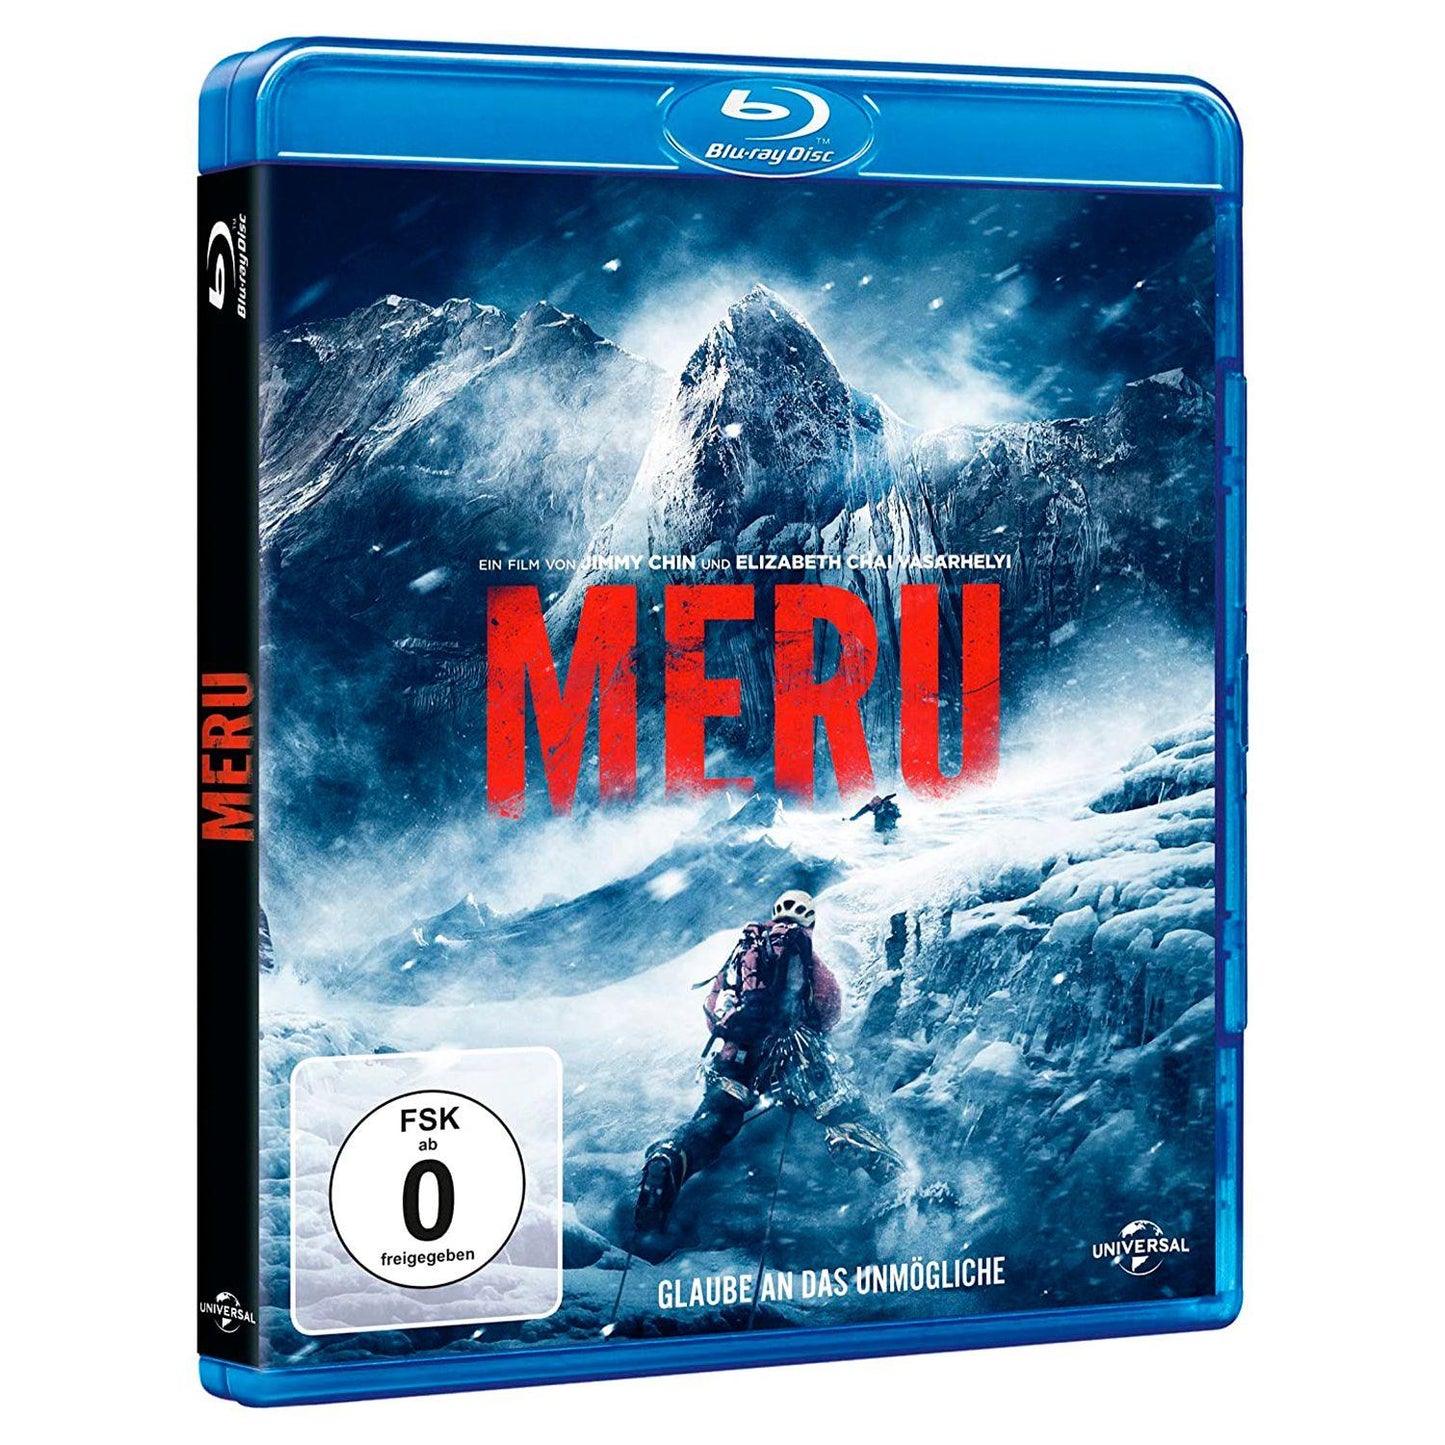 Меру (2015) (русс. субтитры) (Blu-ray)